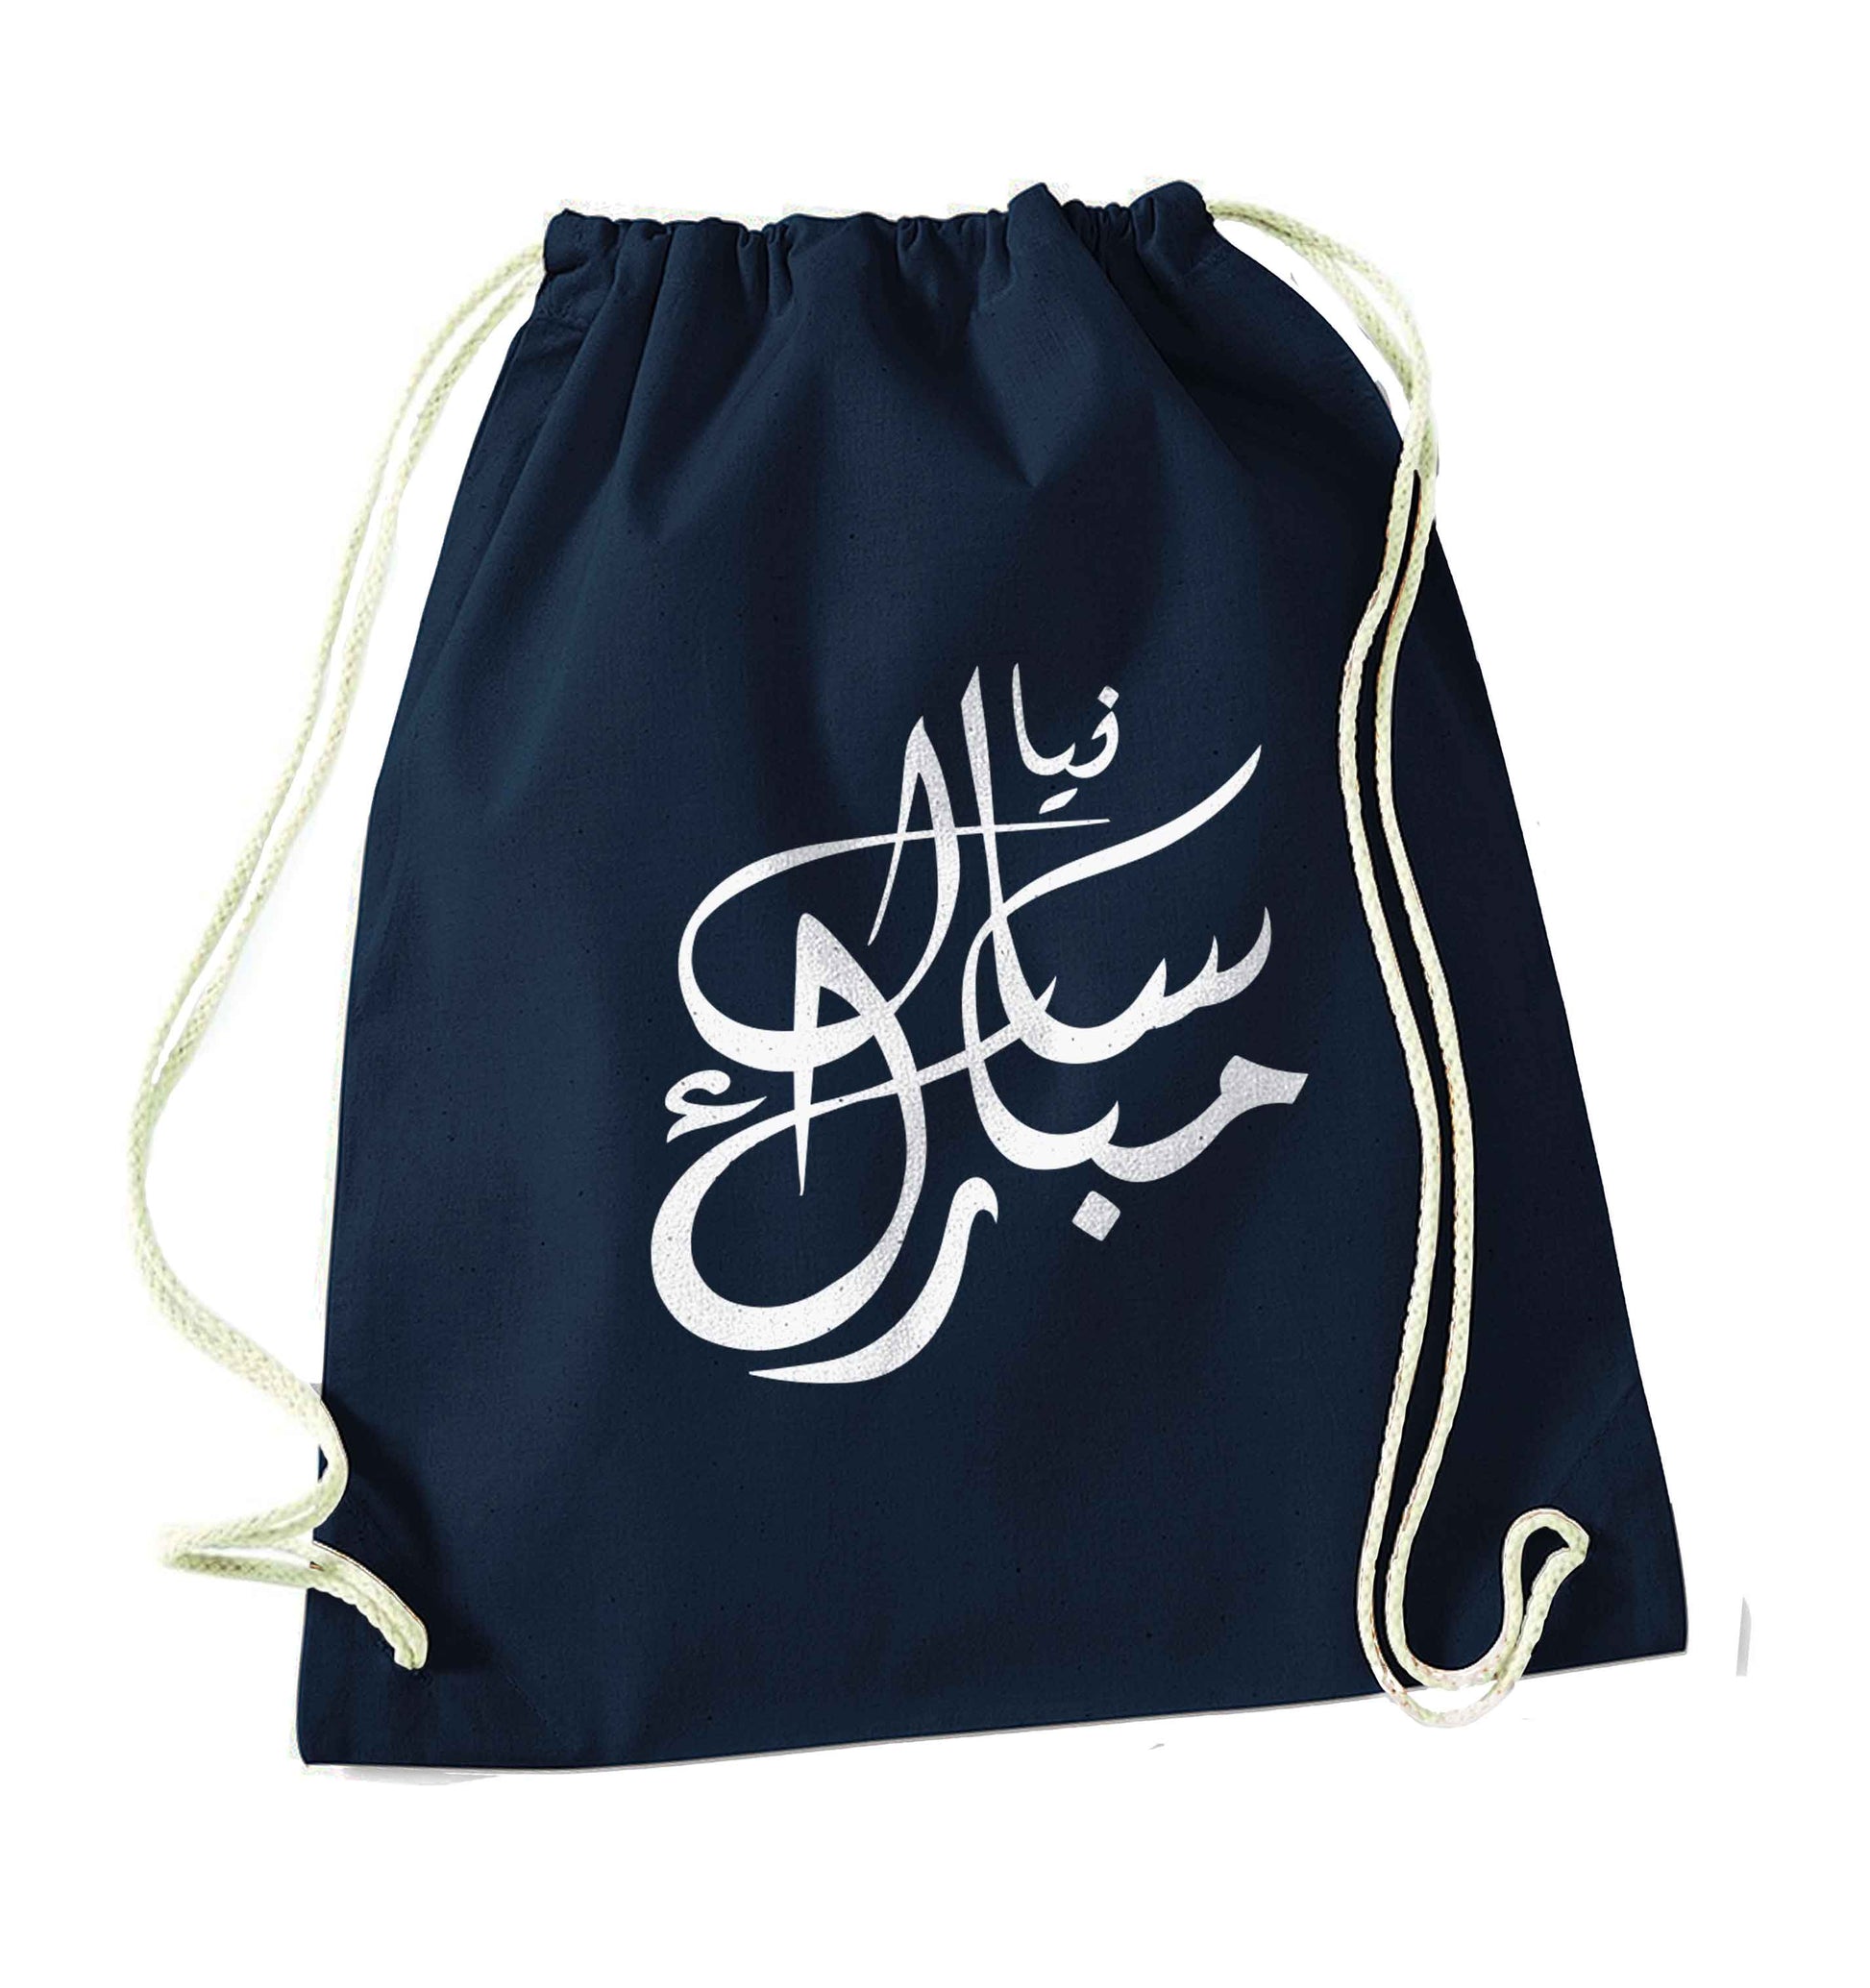 Urdu Naya saal mubarak navy drawstring bag